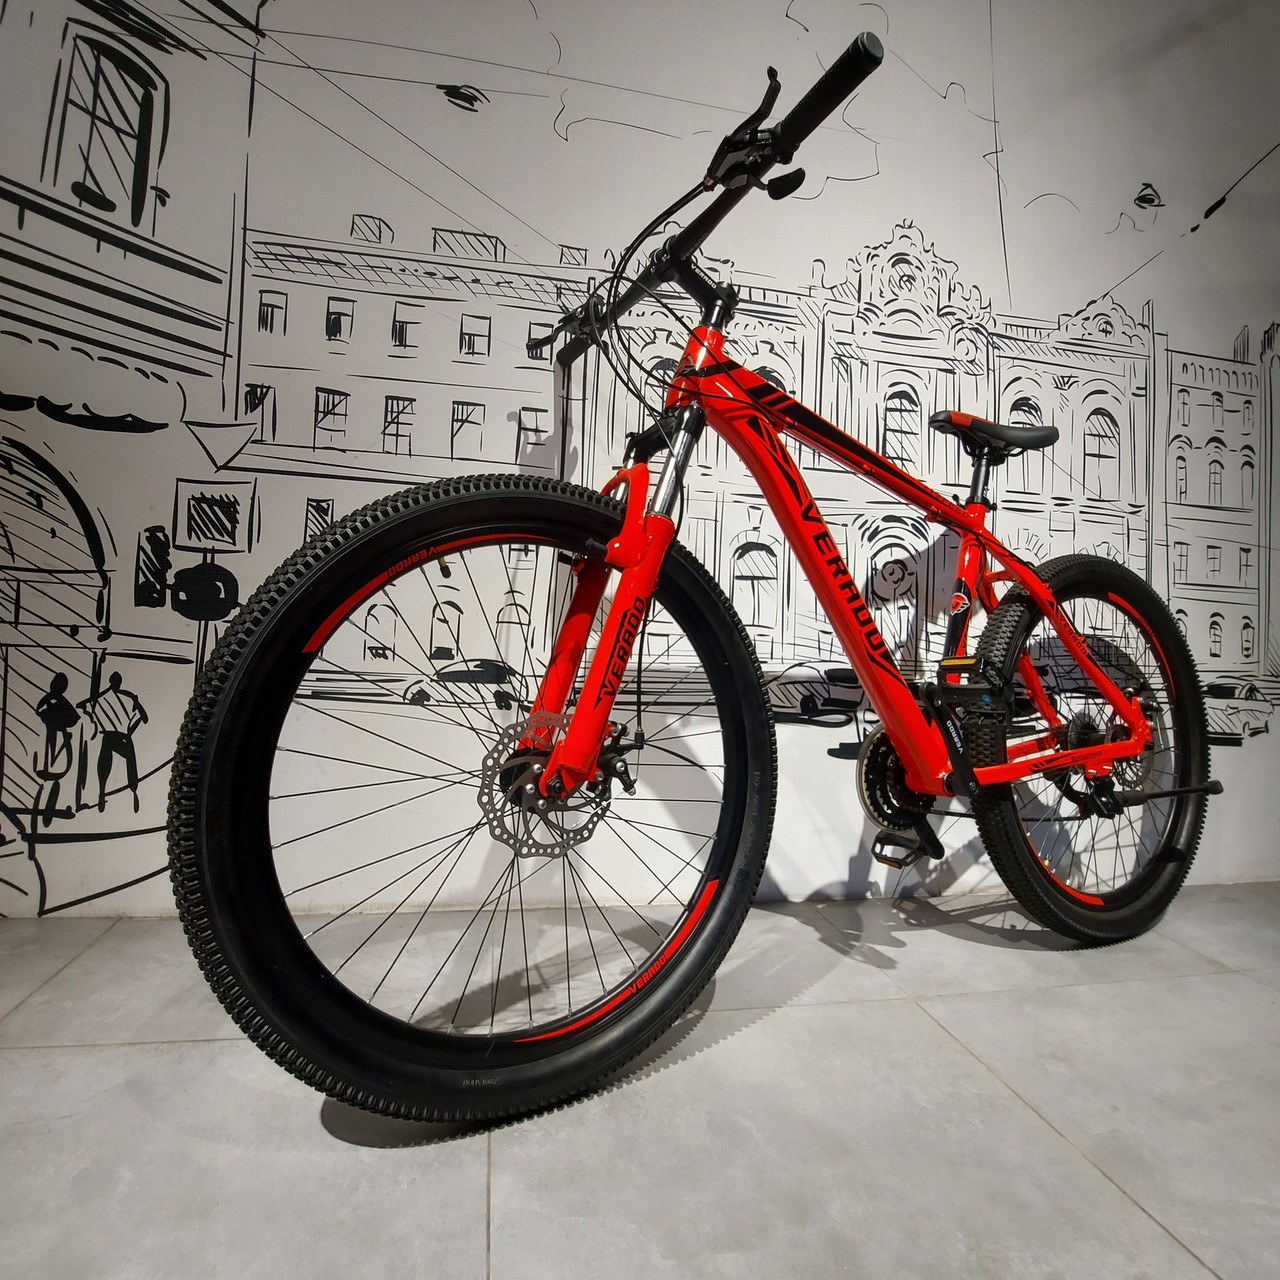 Горный Велосипед Verado 27,5 MD для кросс-кантри. 19 рама. Скоростной. Mtb. Хардтейл. Отличный подарок.